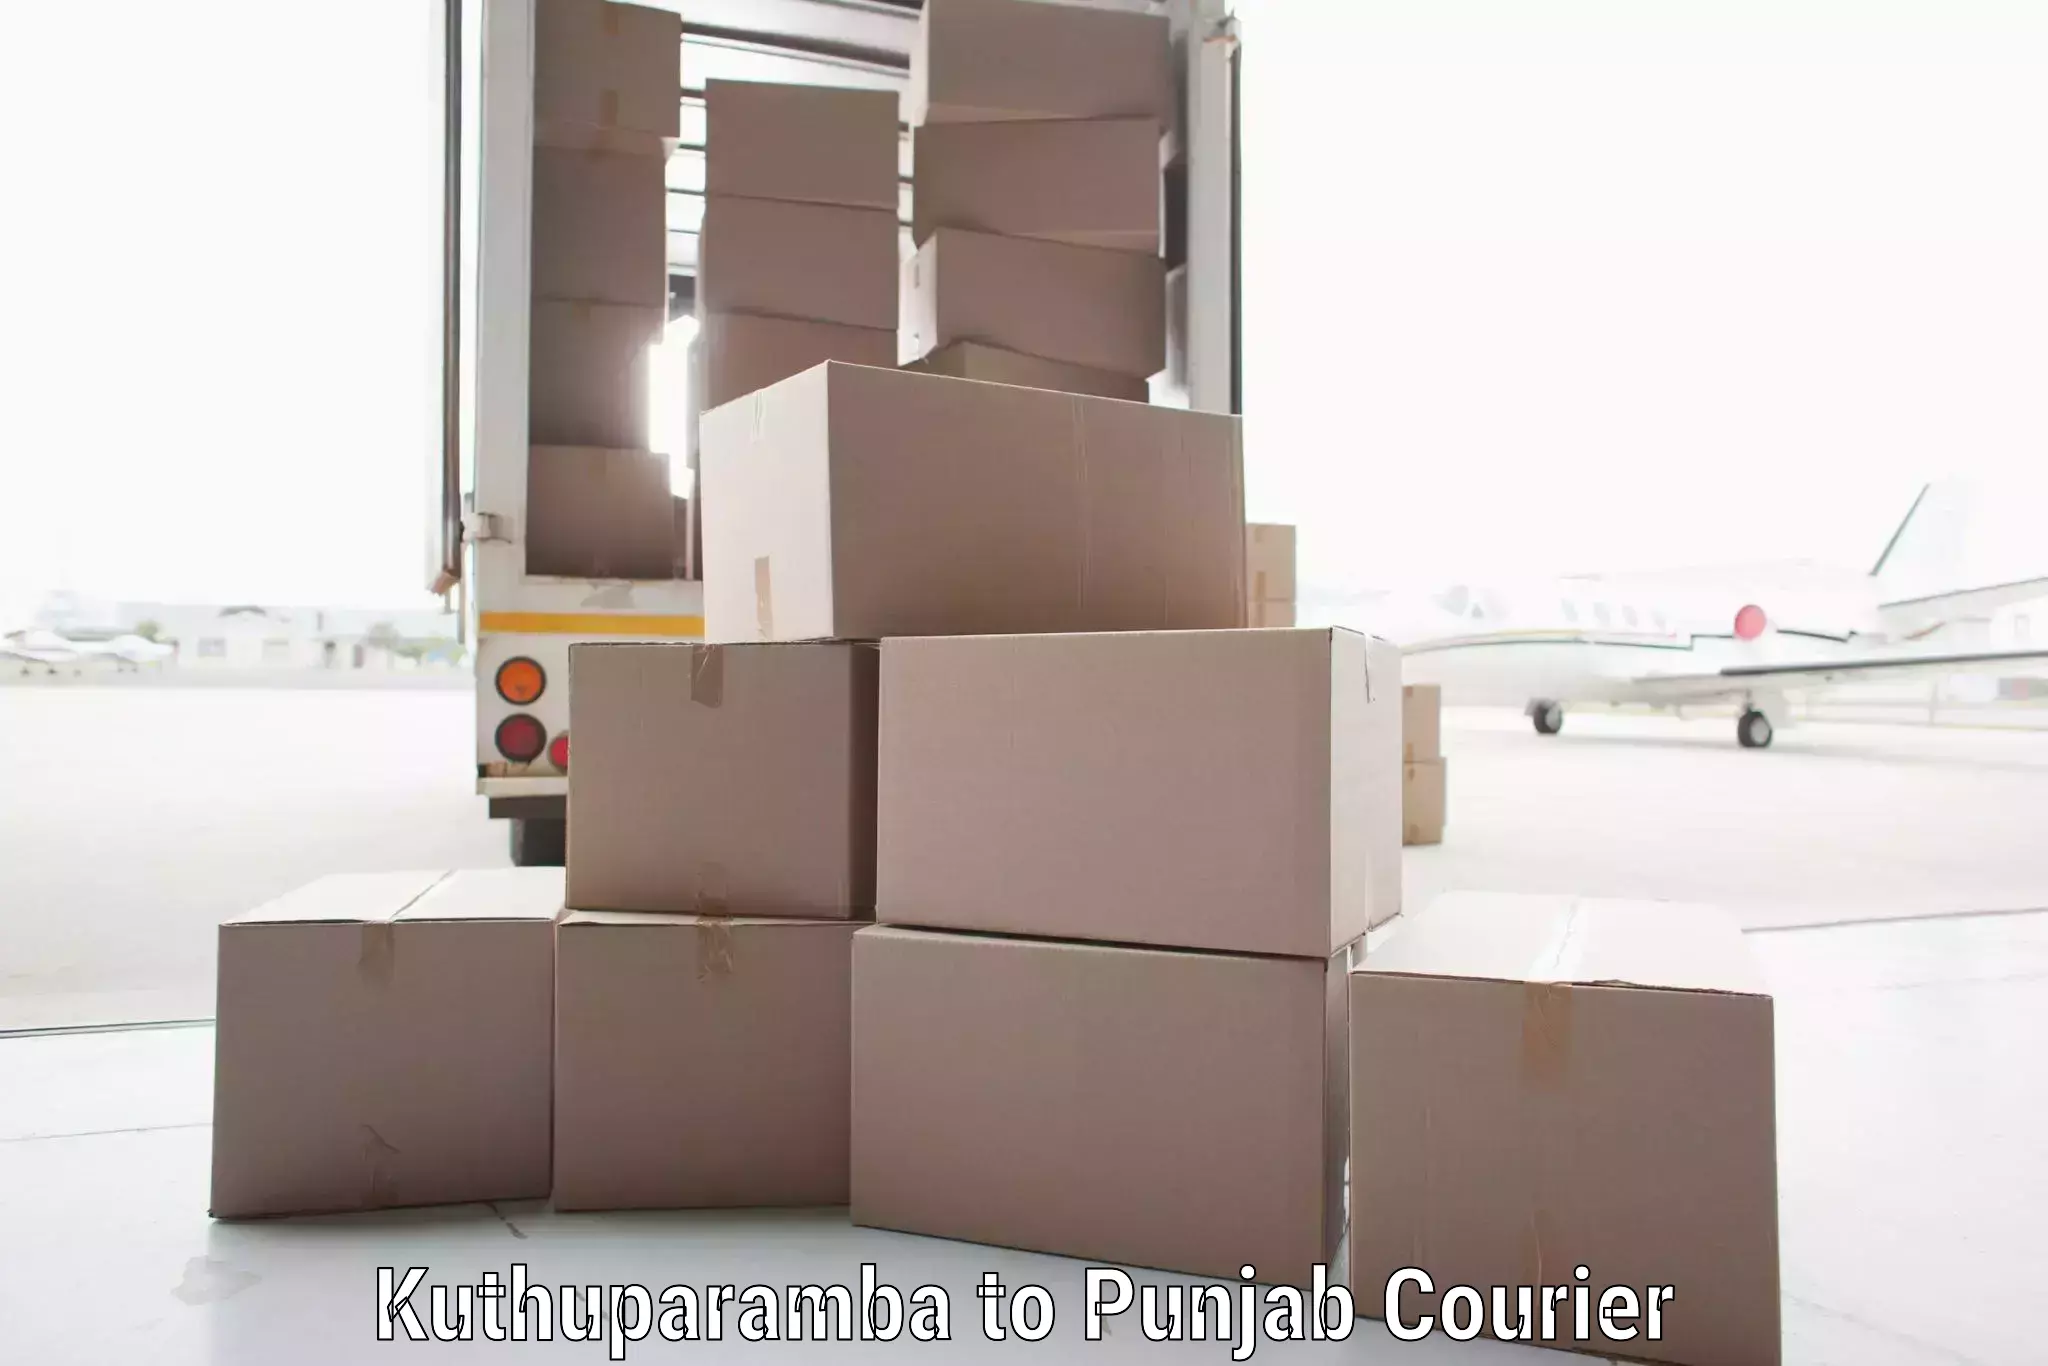 Bulk shipment Kuthuparamba to Punjab